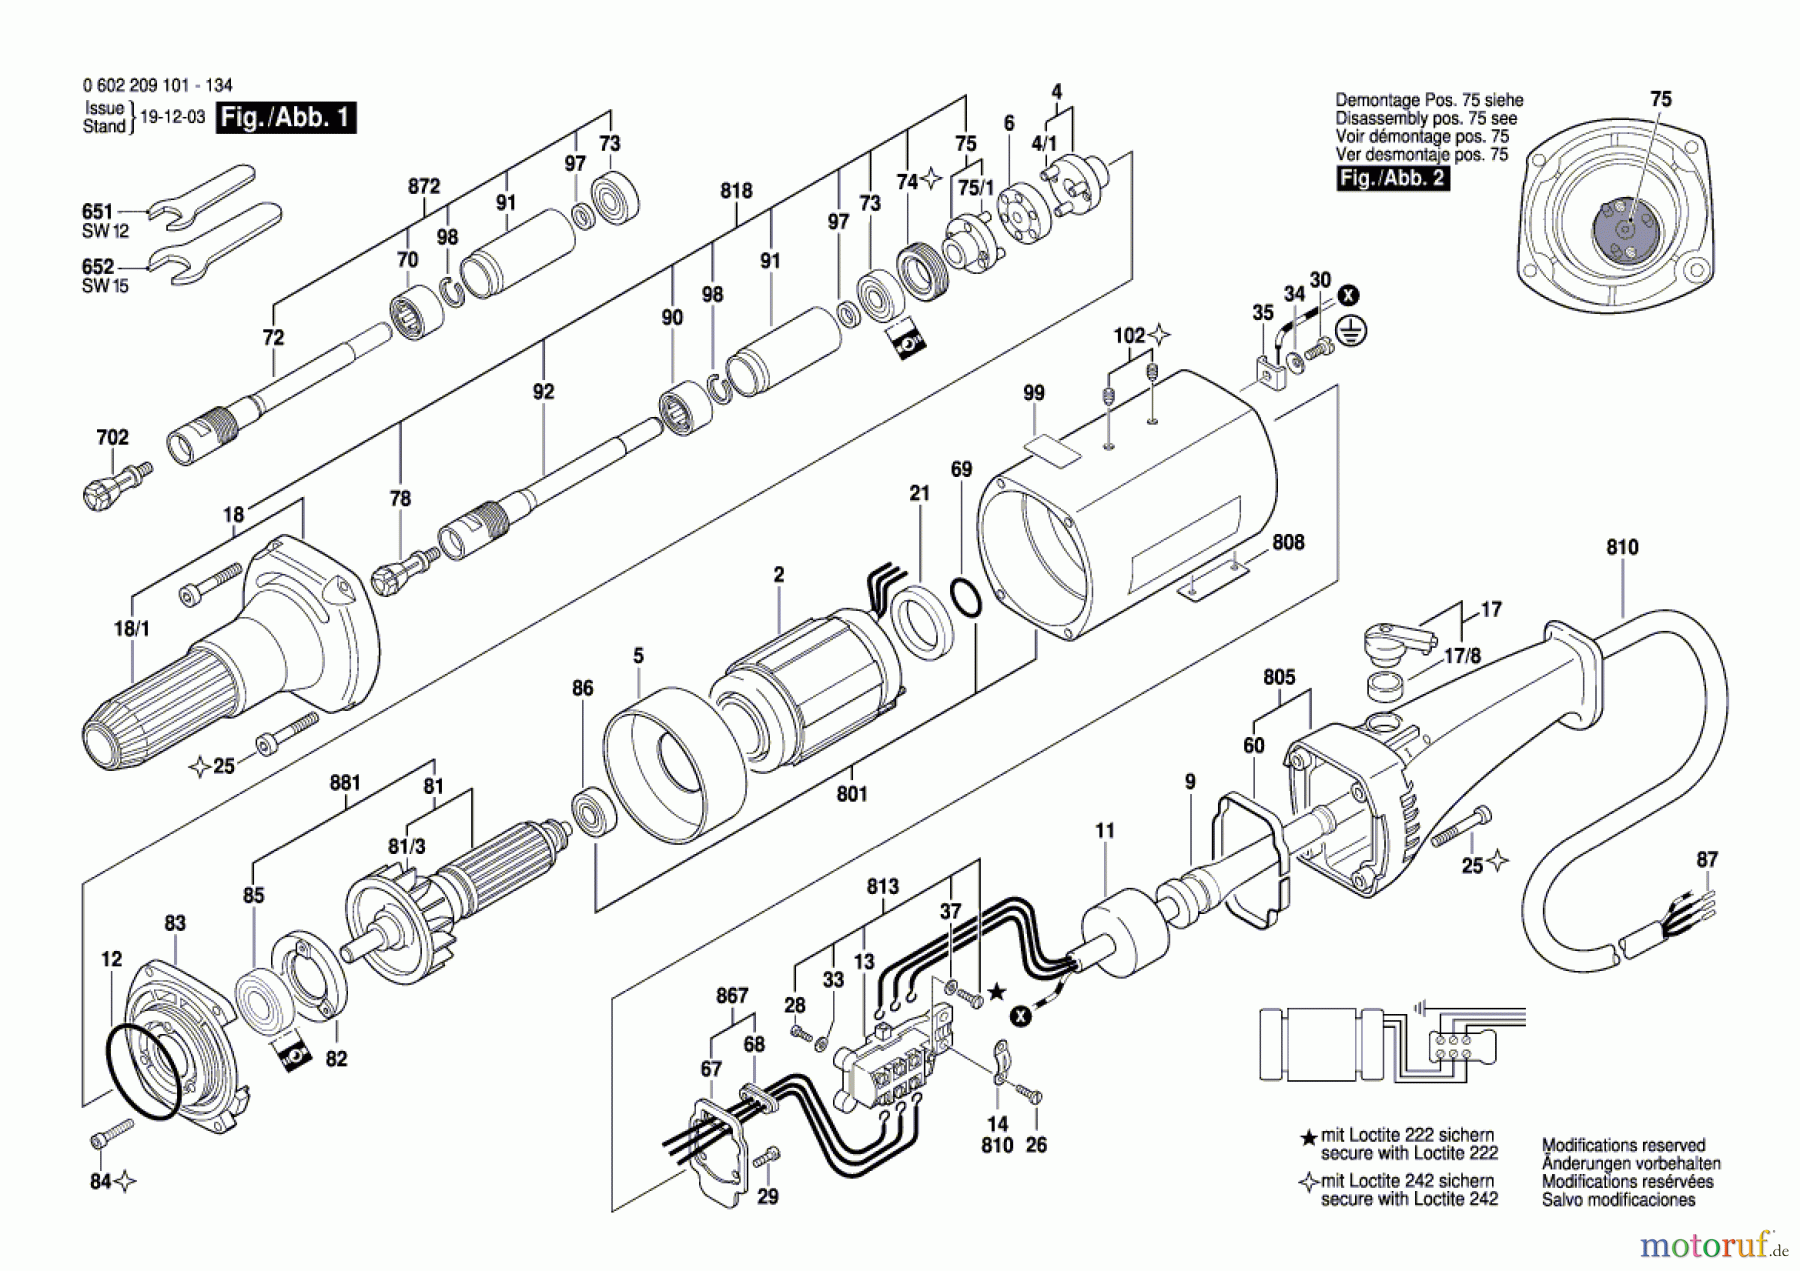  Bosch Werkzeug Geradschleifer 2 209 1 Seite 1